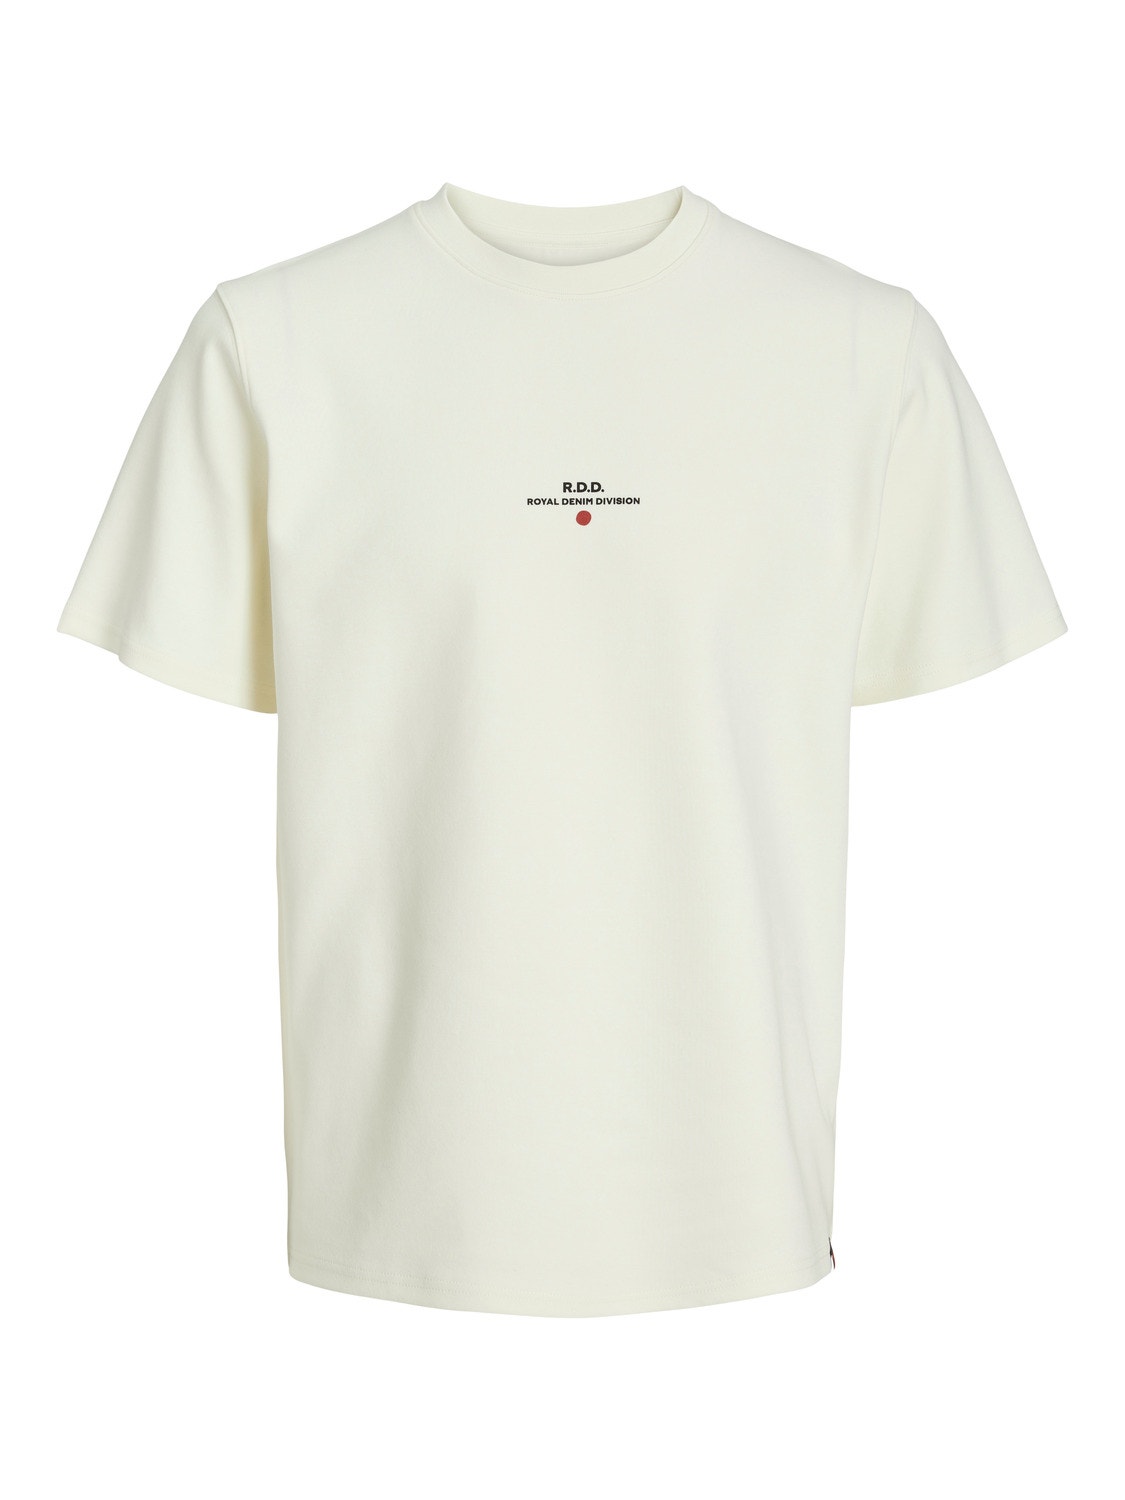 Jack & Jones RDD Καλοκαιρινό μπλουζάκι -Egret - 12243500